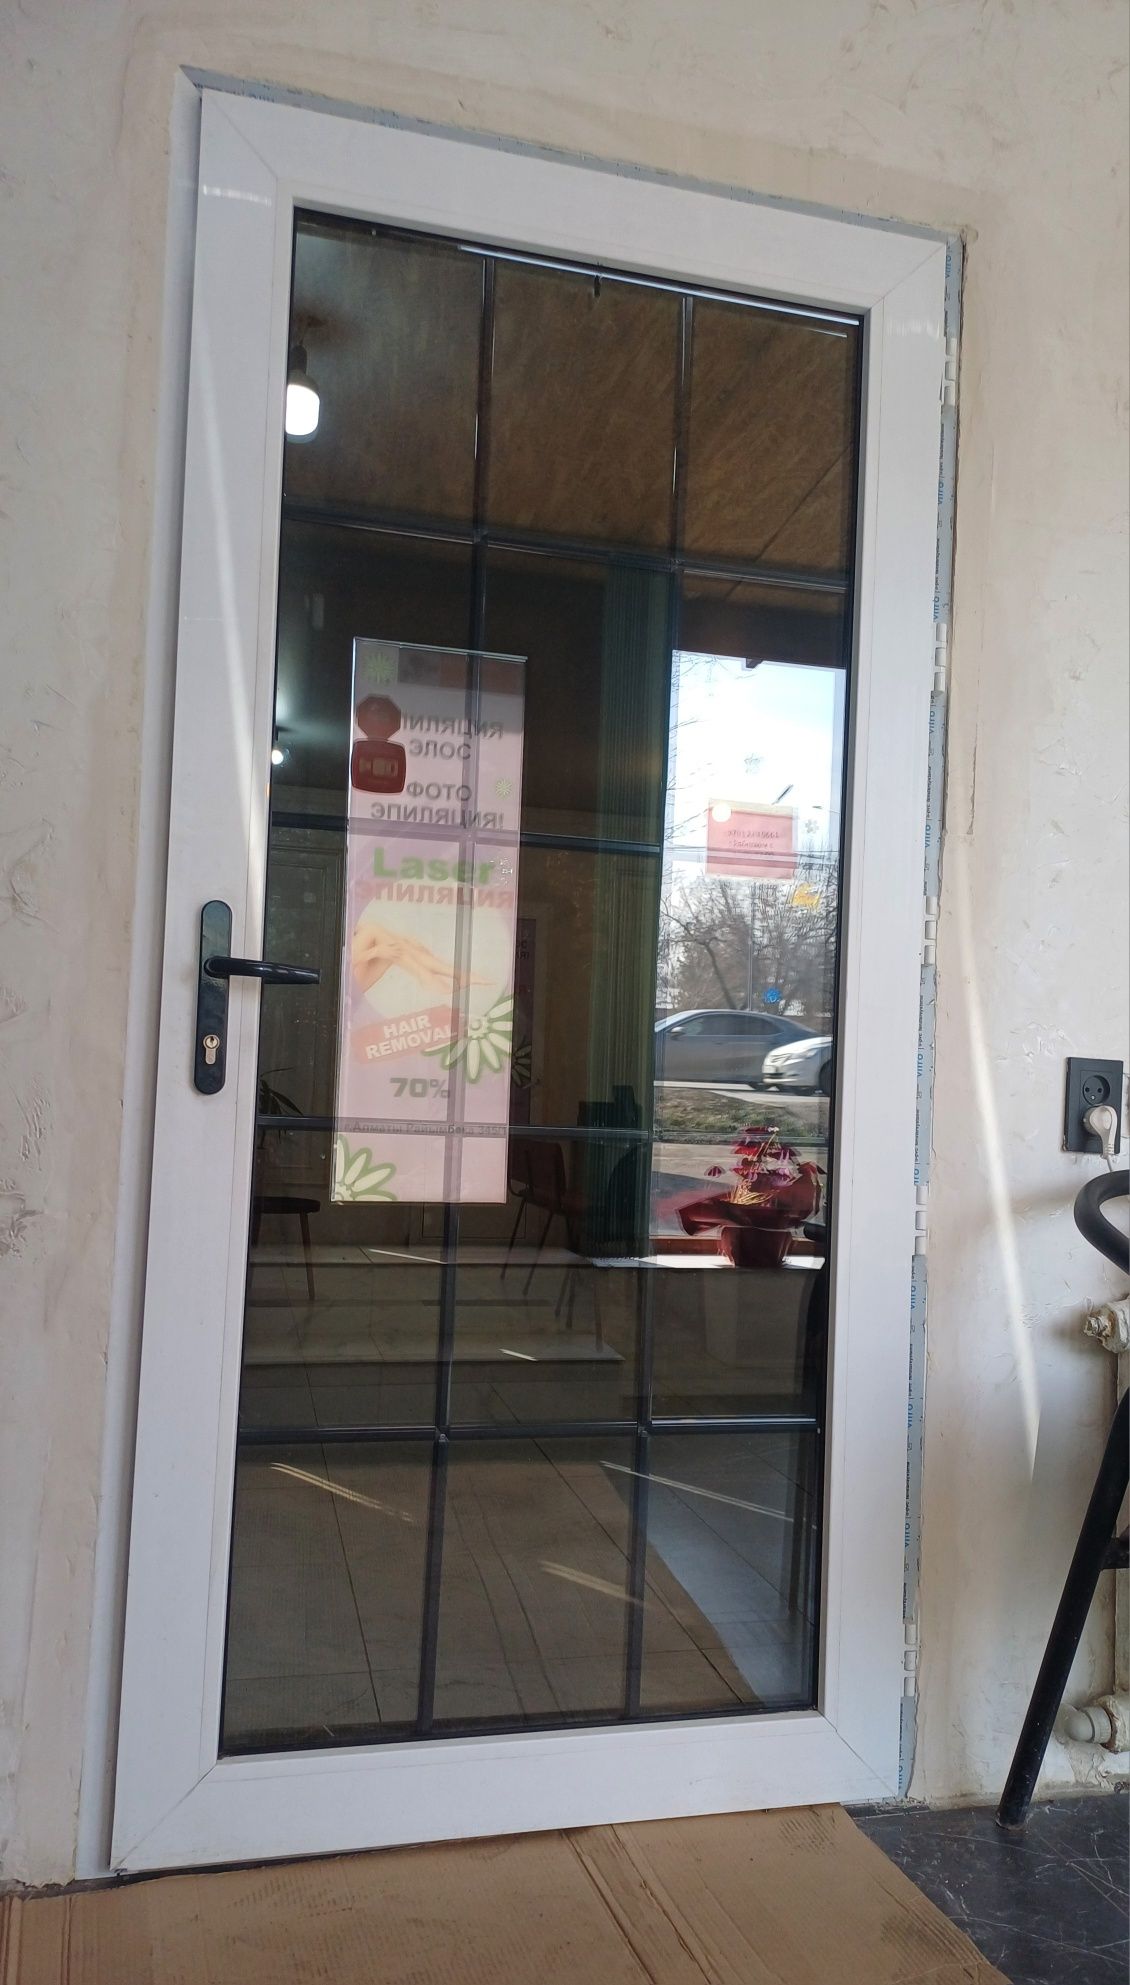 Пластиковые окна двери витражи Алматы 30000тыс сервис гарантия